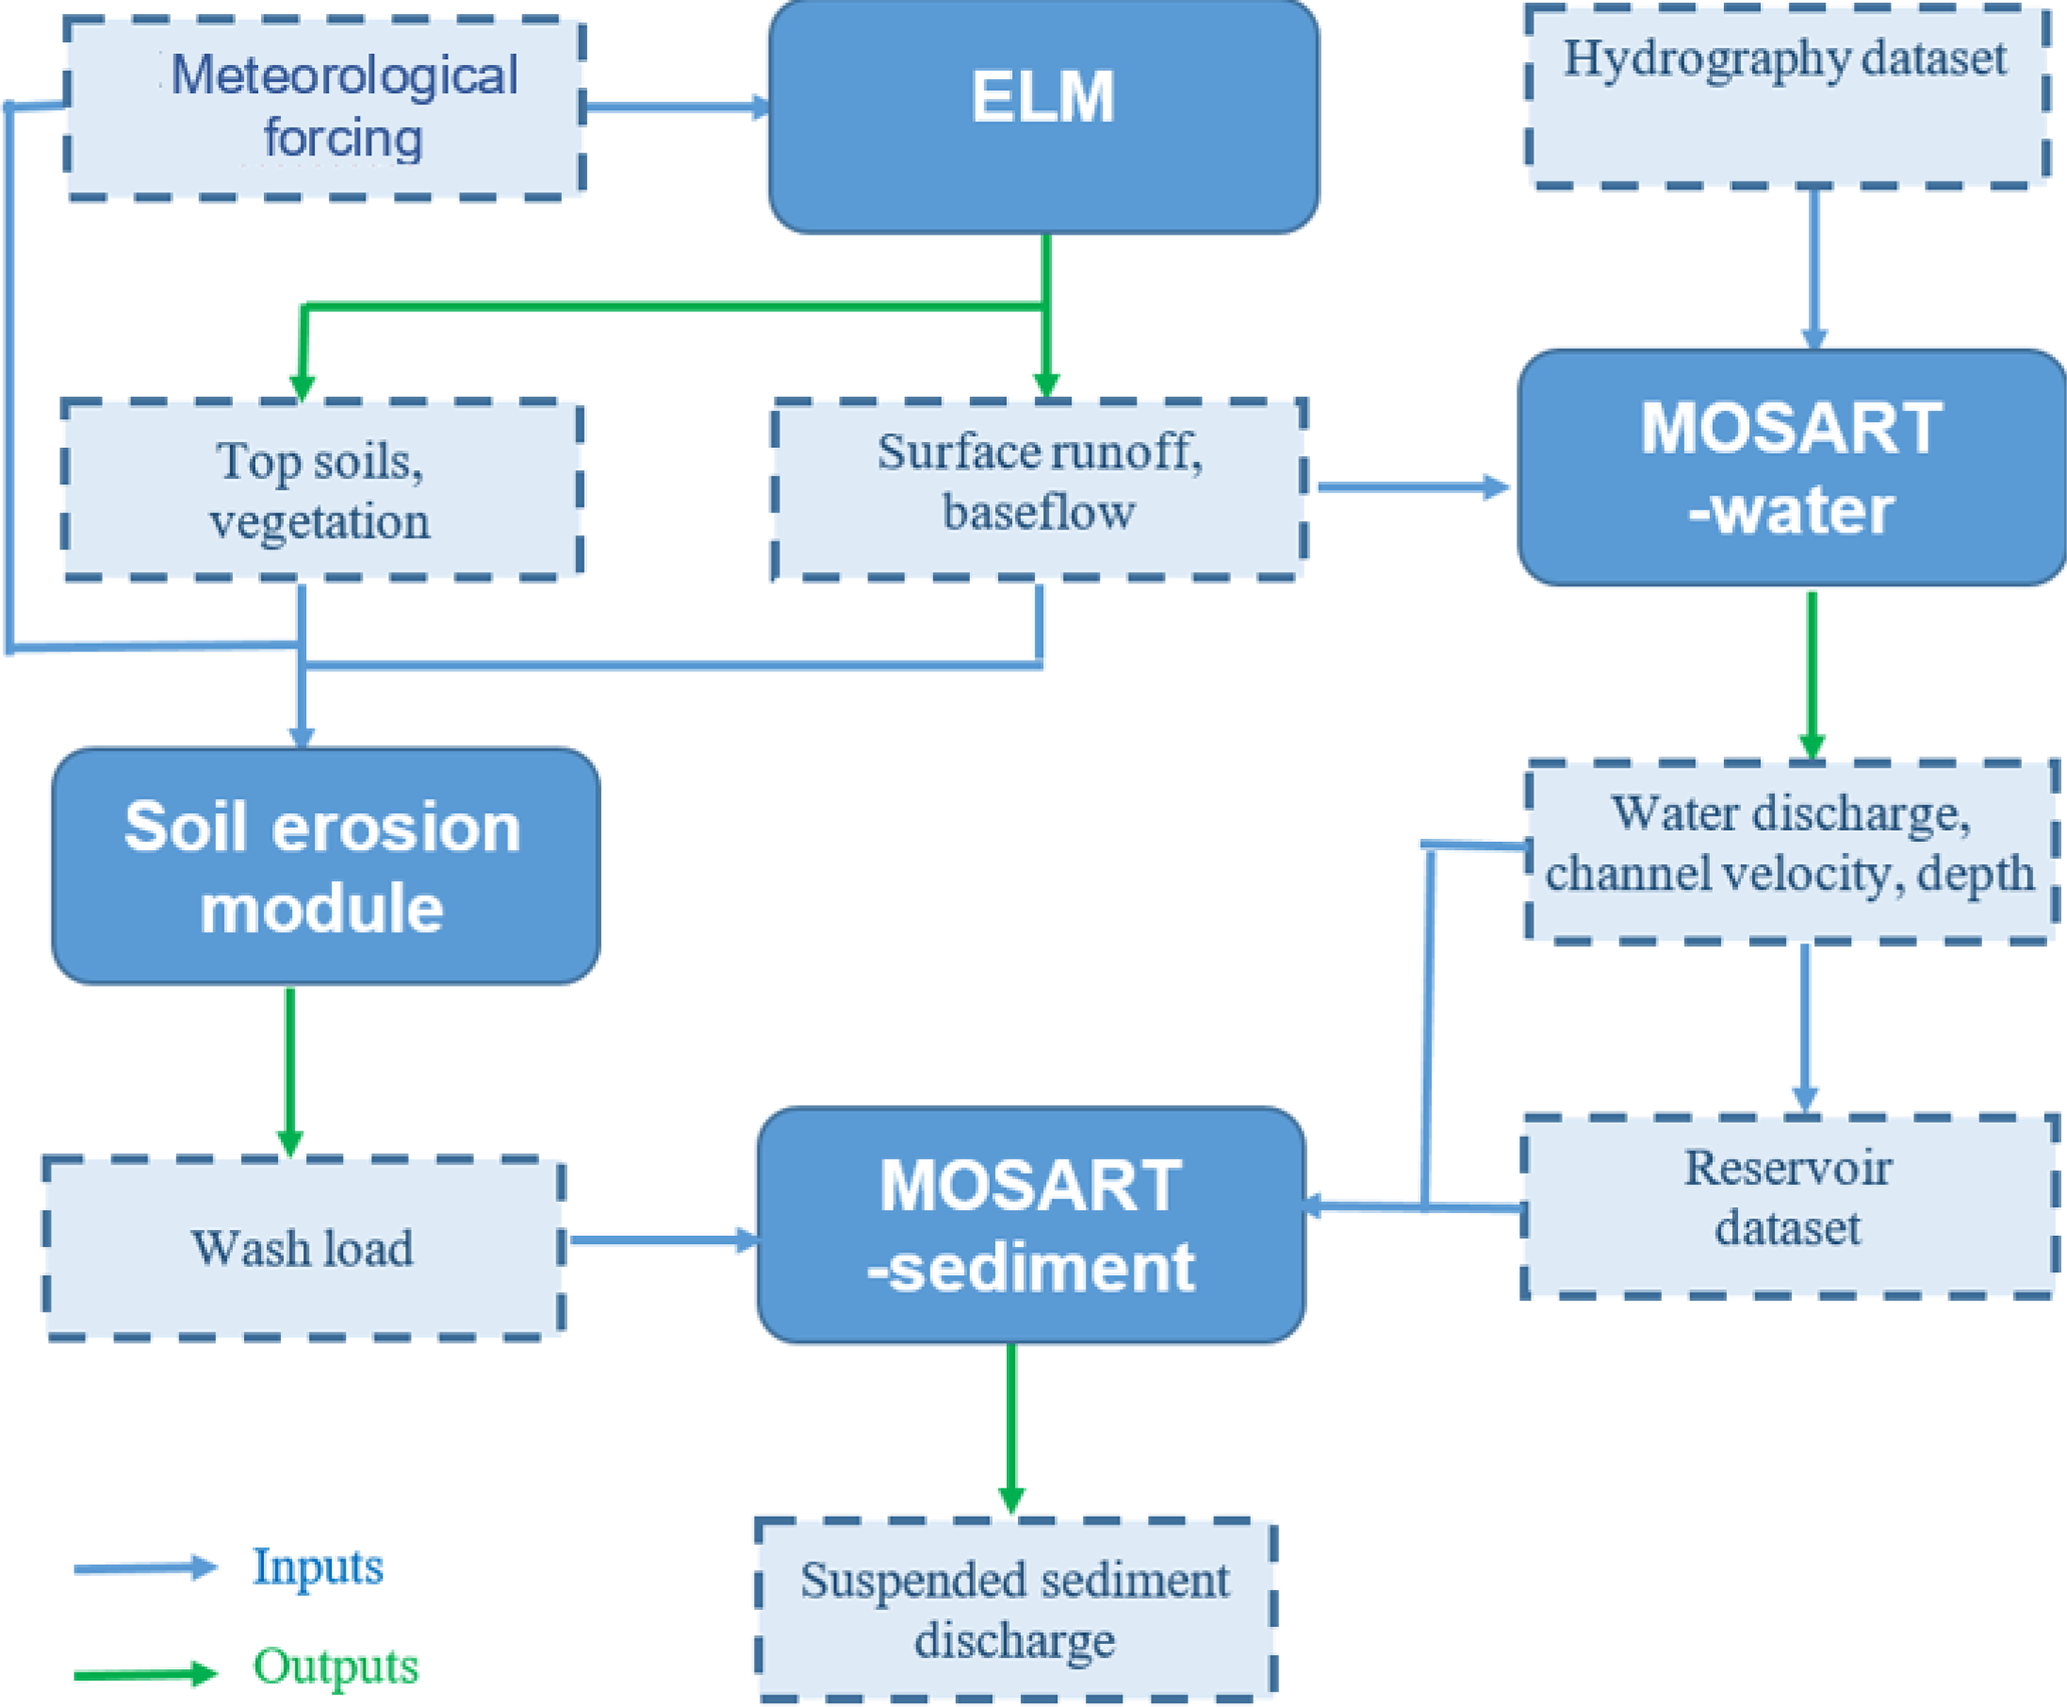 Modeling framework of MOSART-sediment